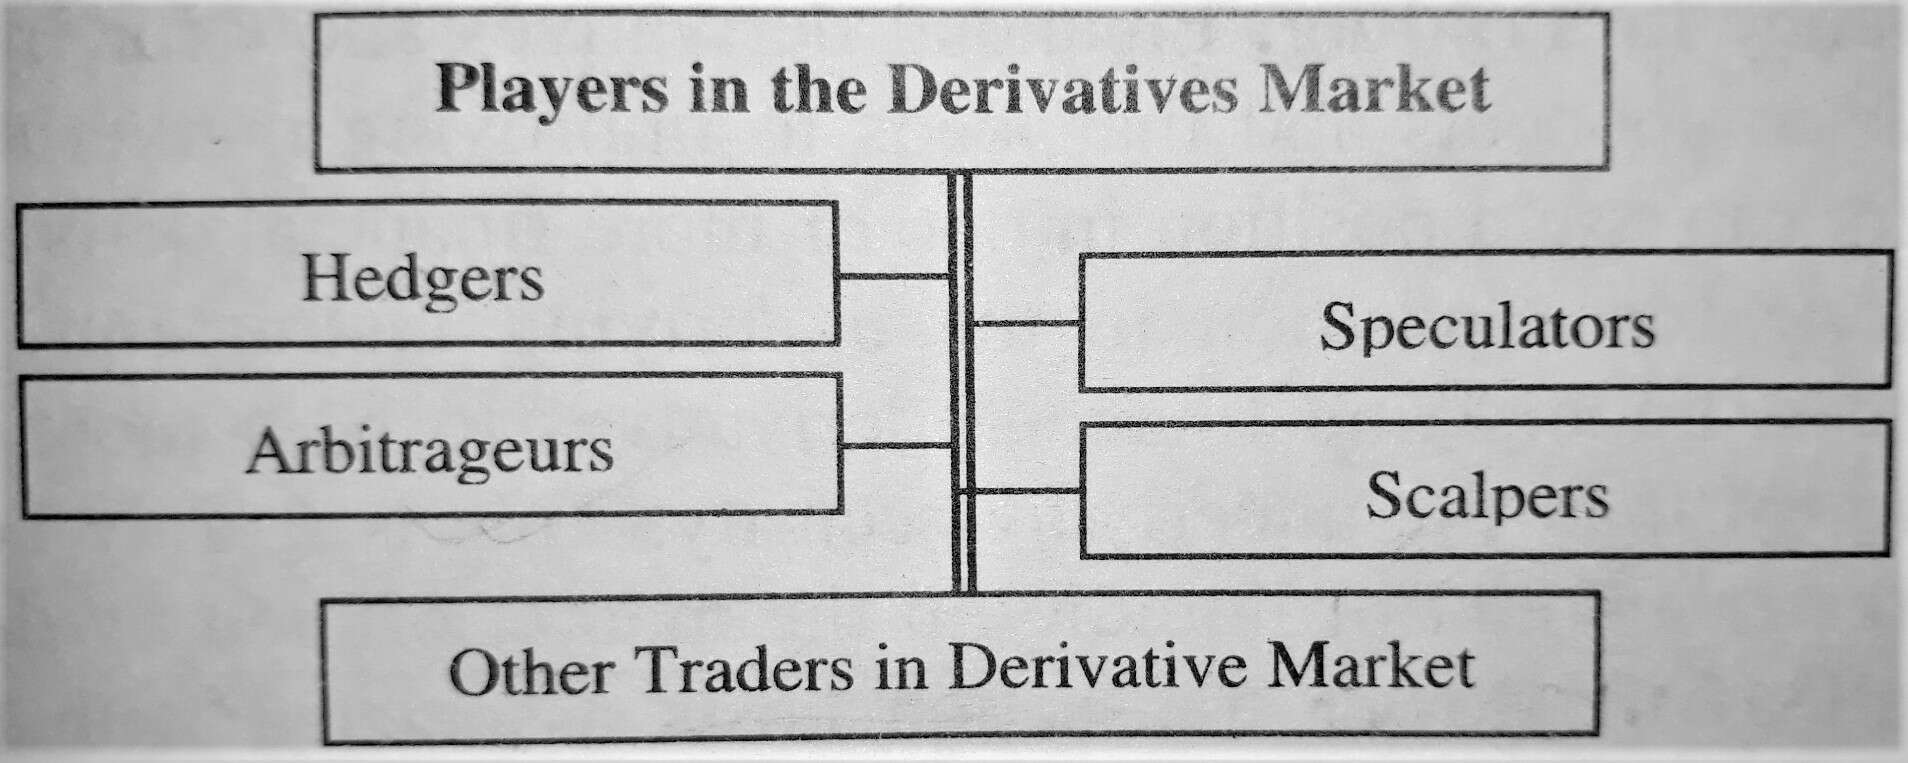 Players in Derivaties Market